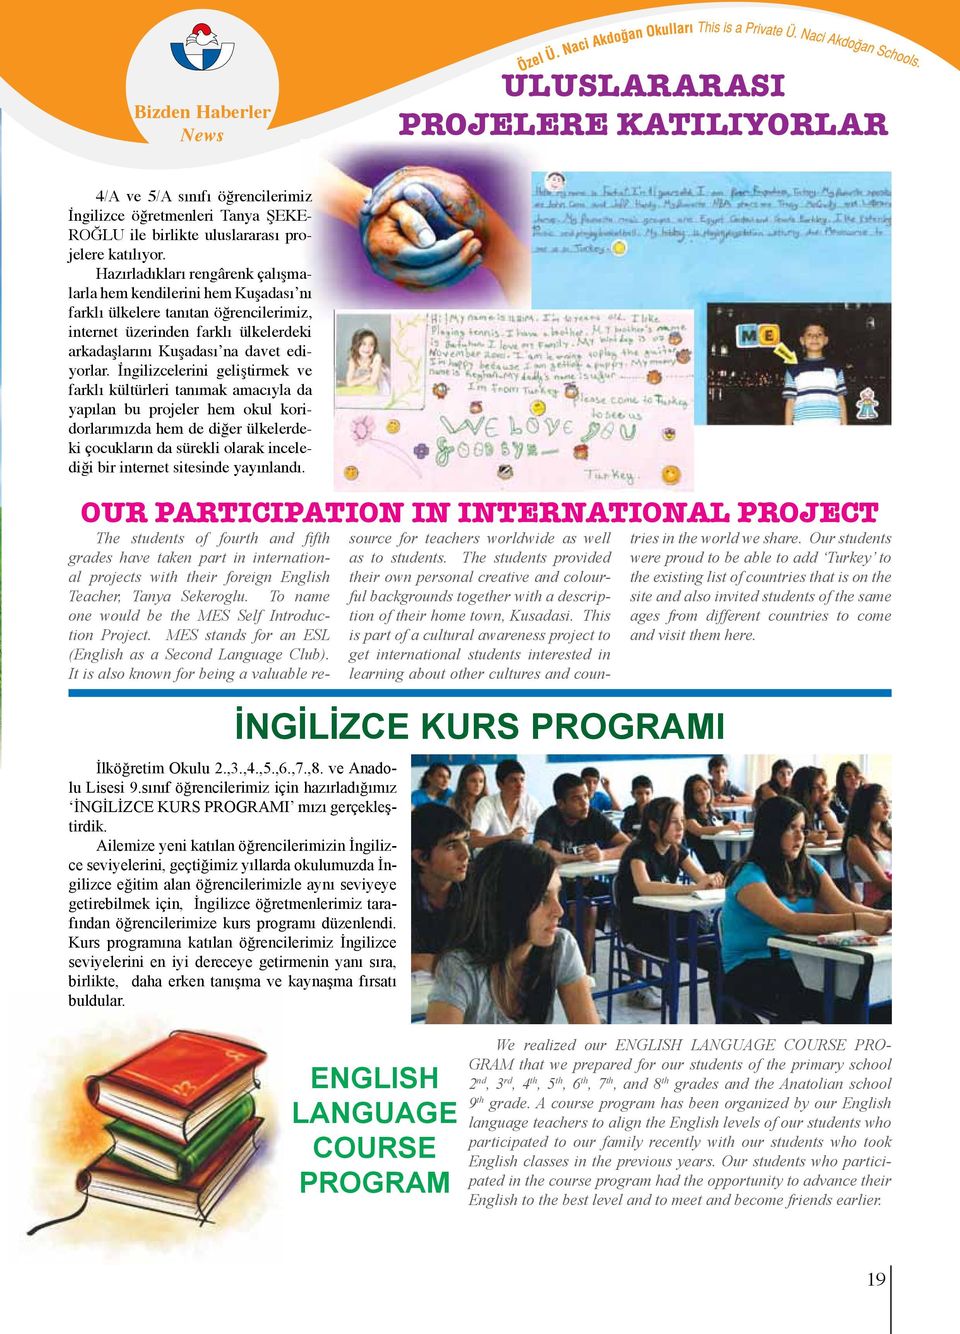 İngilizcelerini geliştirmek ve farklı kültürleri tanımak amacıyla da yapılan bu projeler hem okul koridorlarımızda hem de diğer ülkelerdeki çocukların da sürekli olarak incelediği bir internet